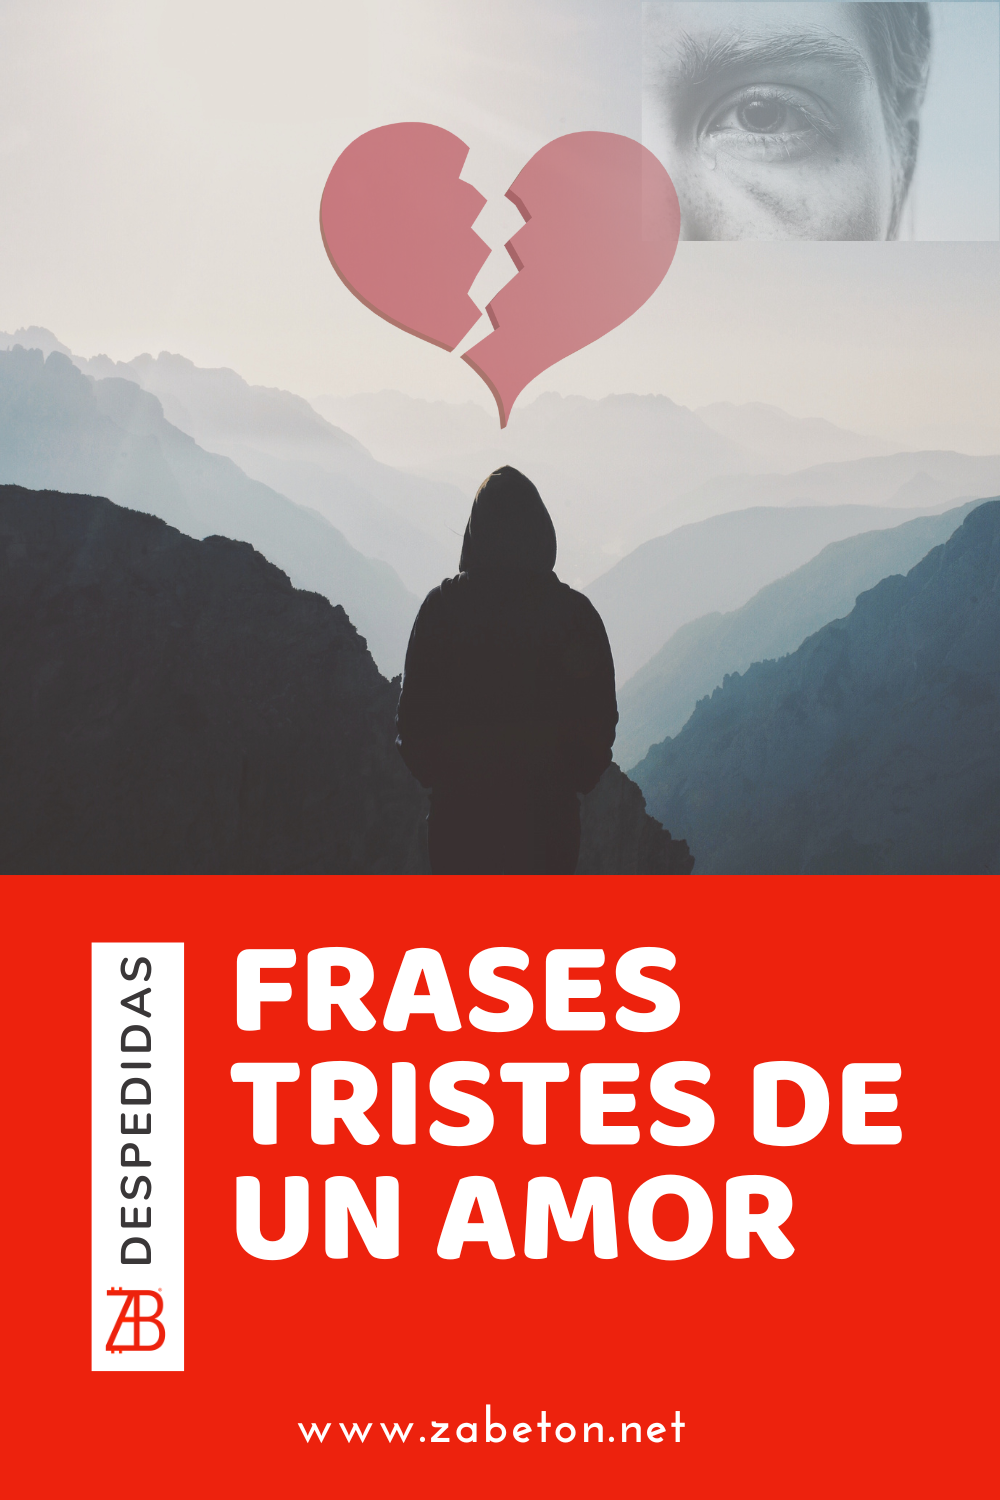 50 Frases Tristes de un Amor (con Imágenes)? 